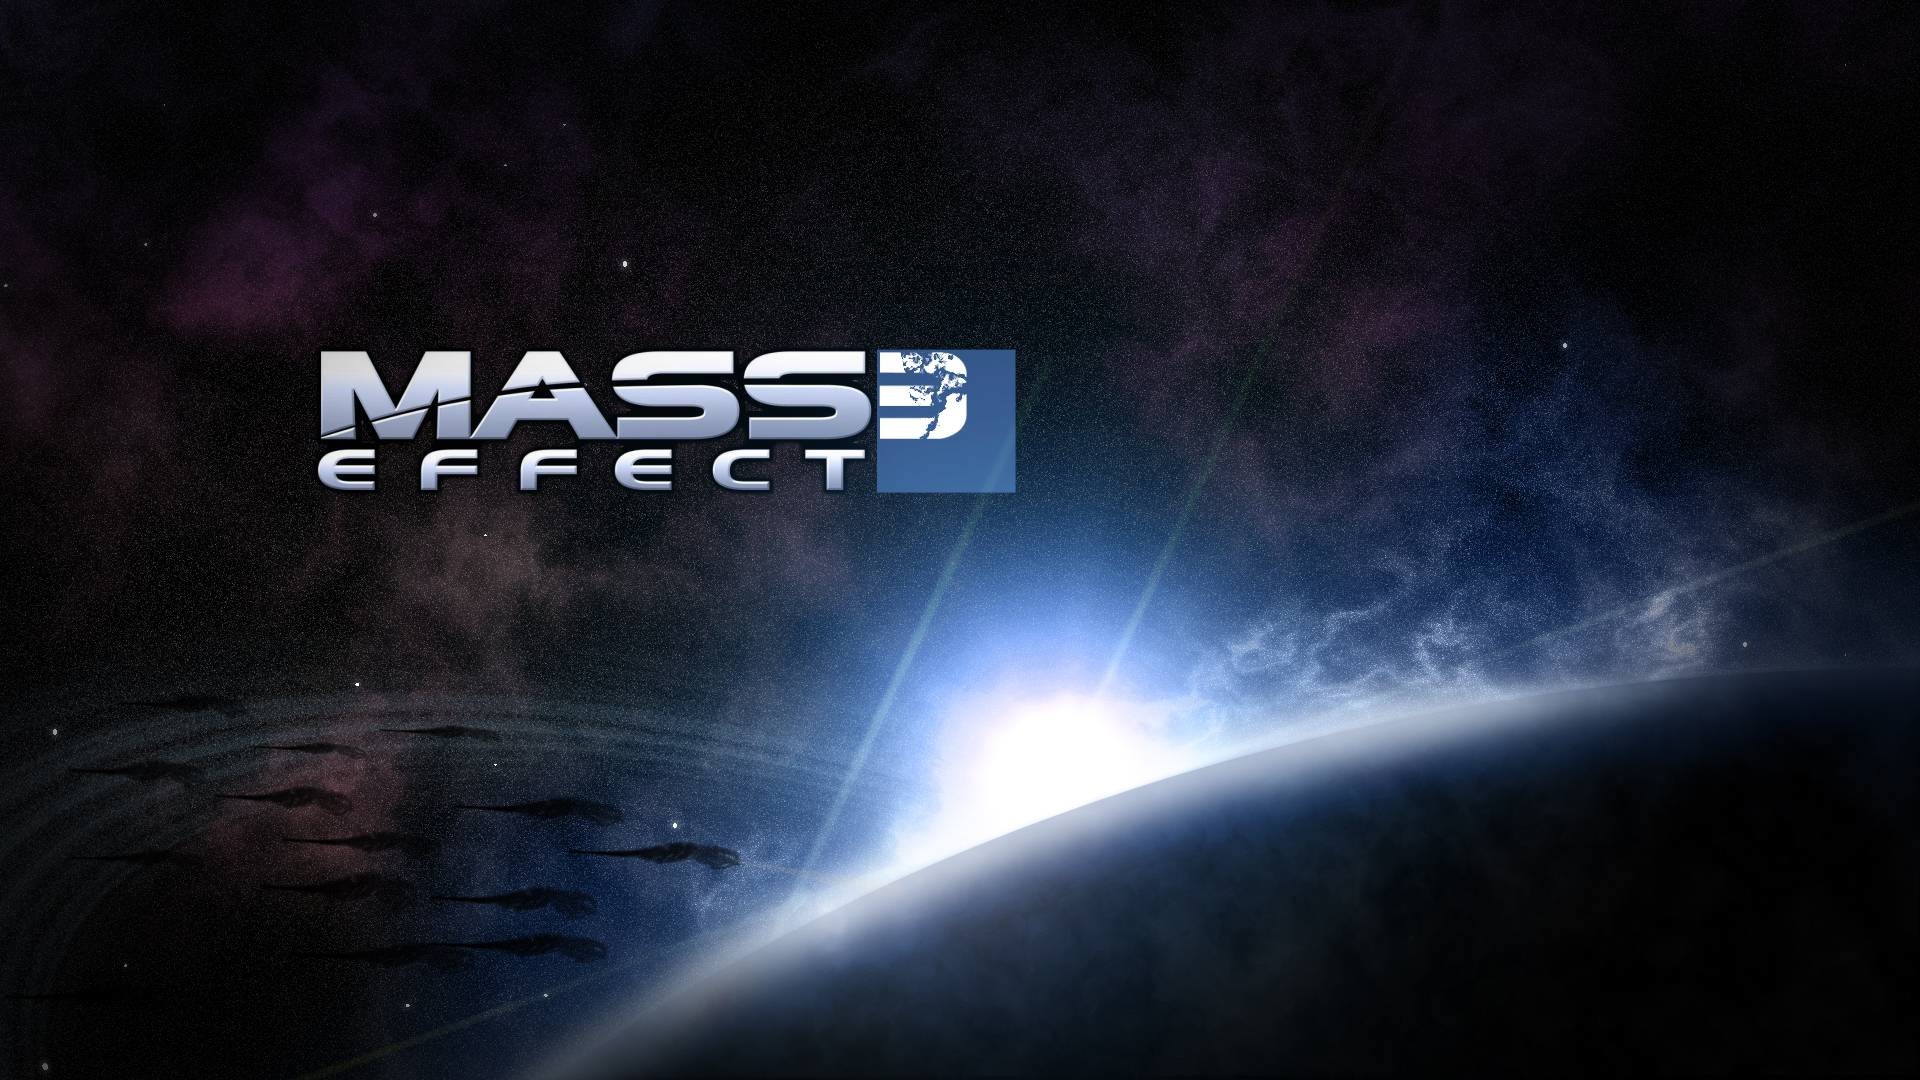 Mass effect 3 wallpa